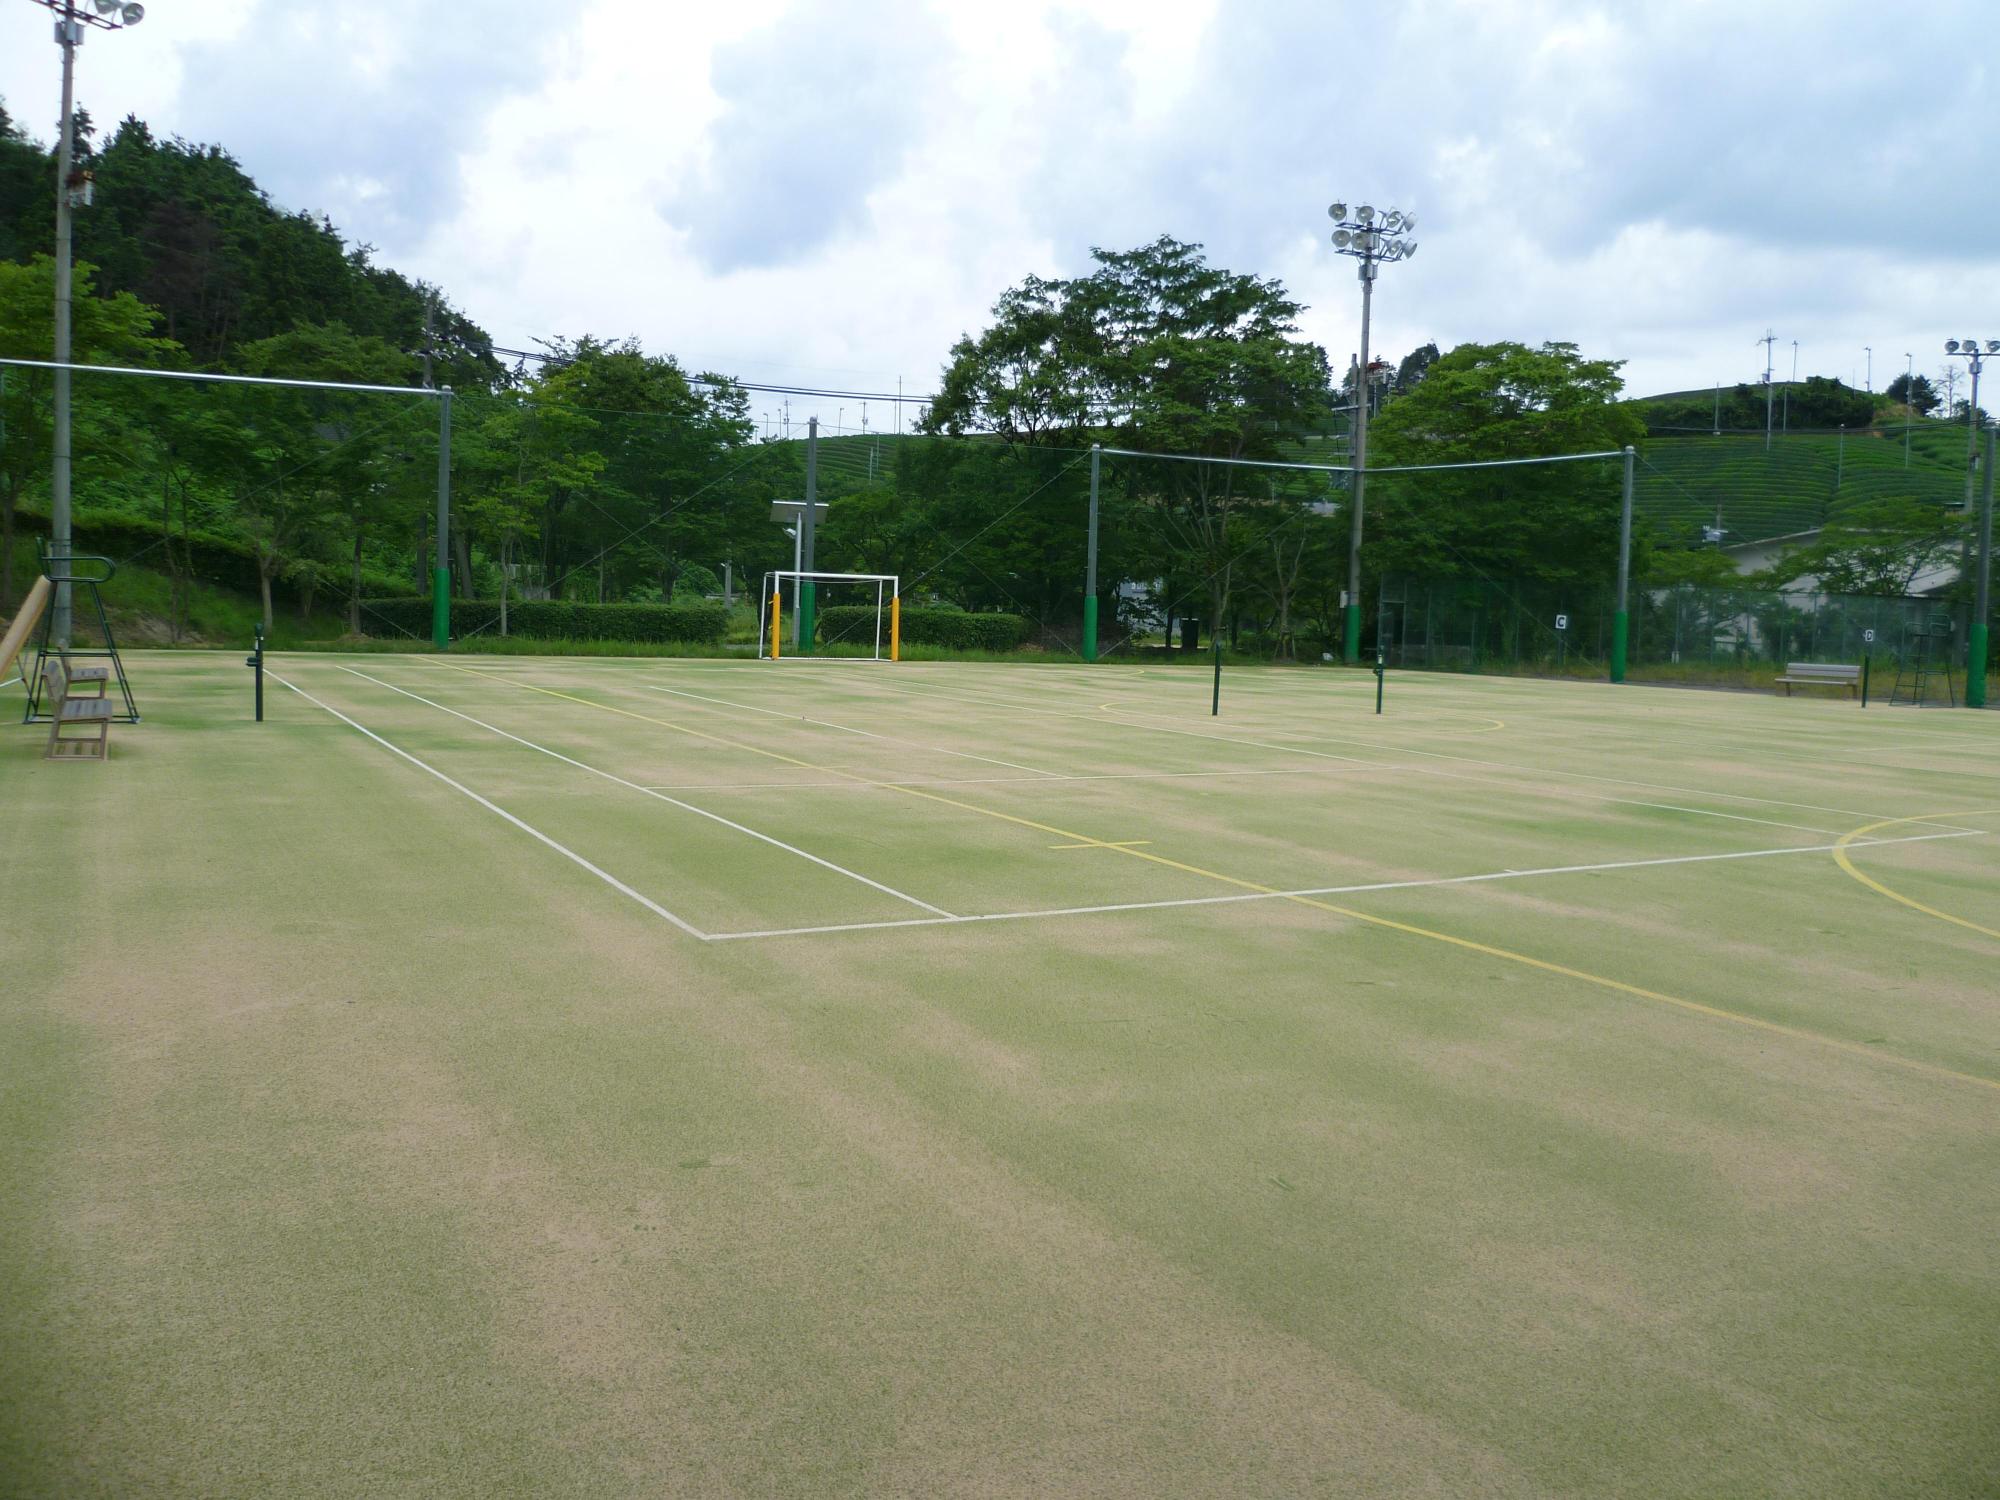 周りがネットに囲まれている、照明が設置された2面の砂入り人工芝のテニスコートの写真